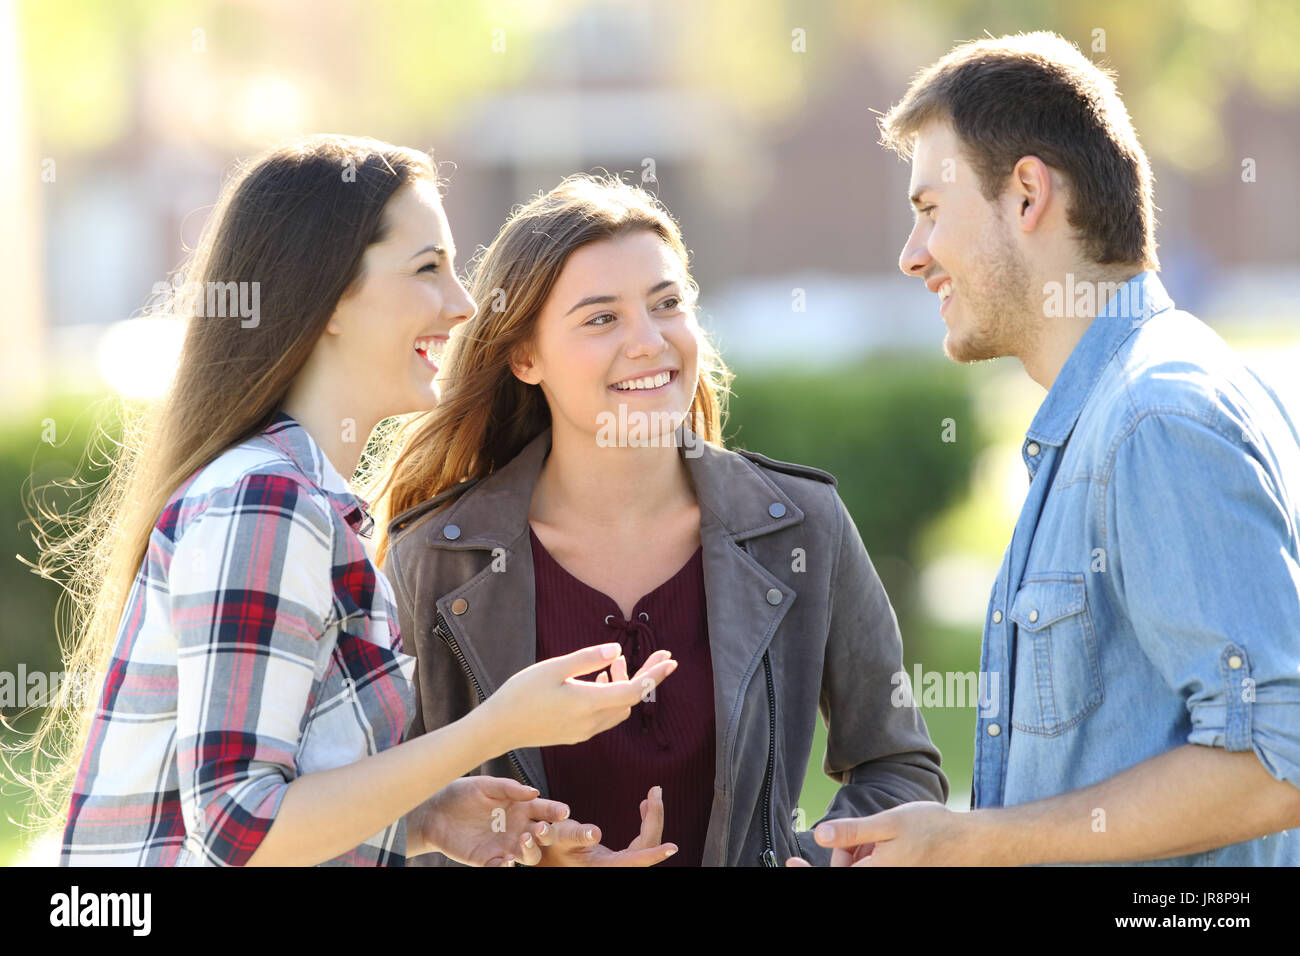 Trois amis heureux d'avoir une conversation et de rire dans la rue Banque D'Images